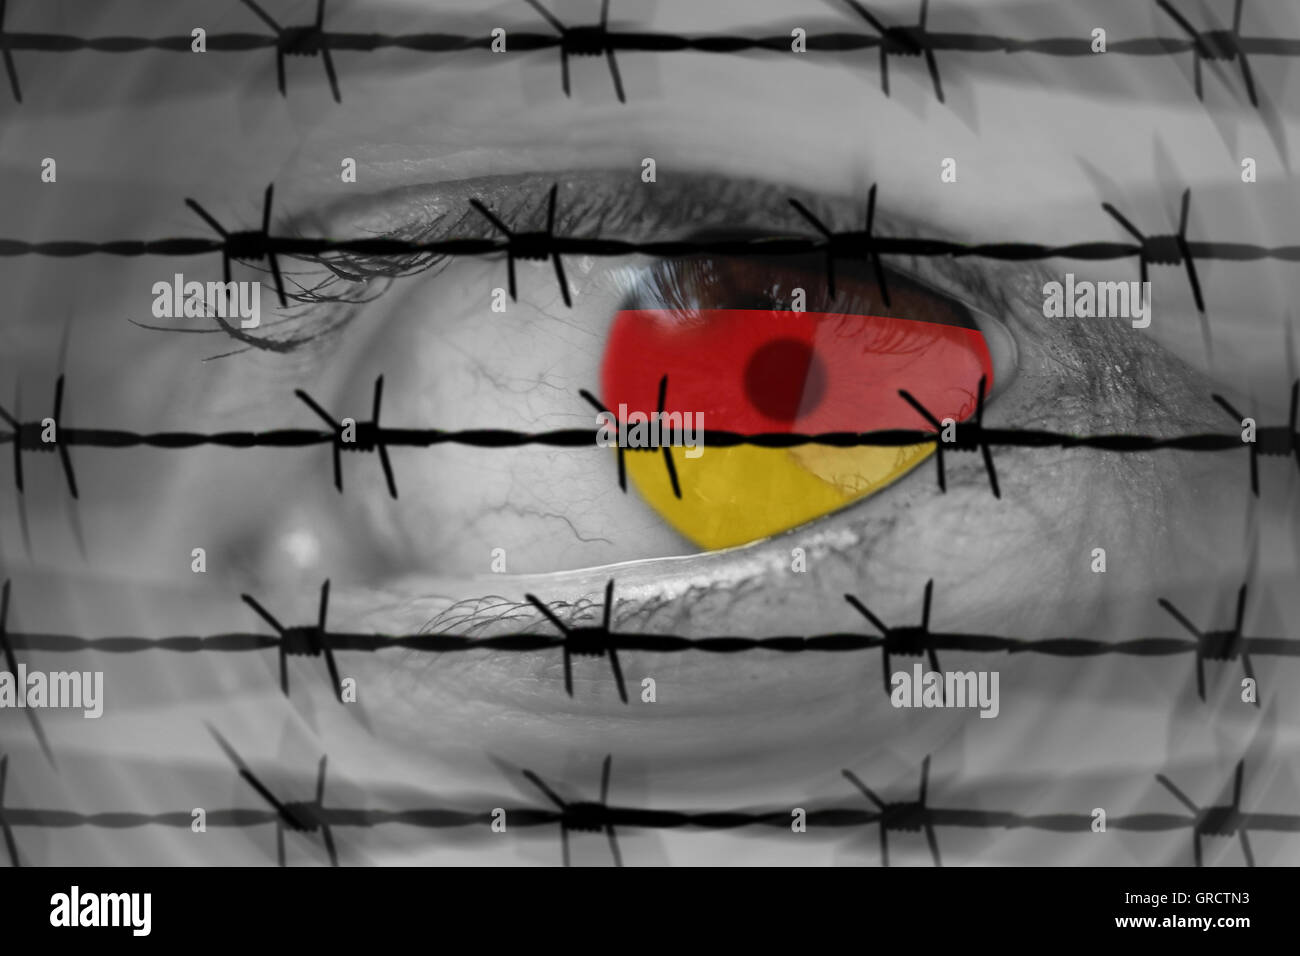 Asylpolitik In Deutschland mit Frau S Auge, Stacheldraht, Draht und deutscher Flagge. Deutschland will Betrag von Flüchtlingen Kappe Stockfoto